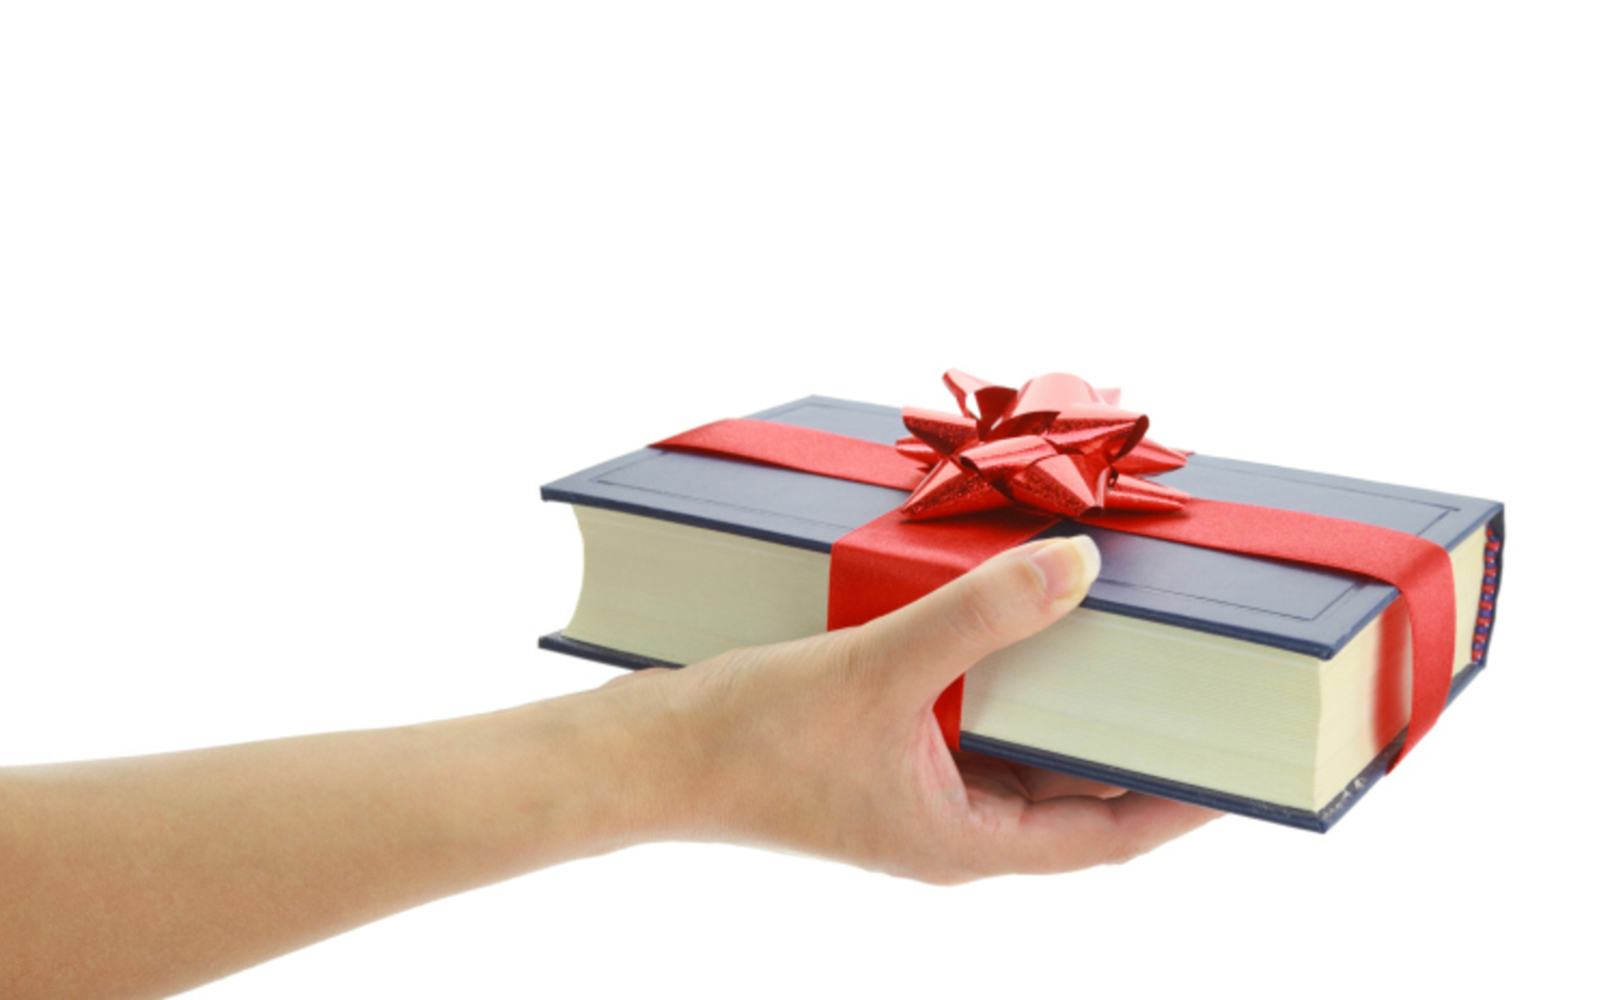 Một cuốn sách hay là món quà tặng ý nghĩa nhất dành cho bạn bè, người thân.